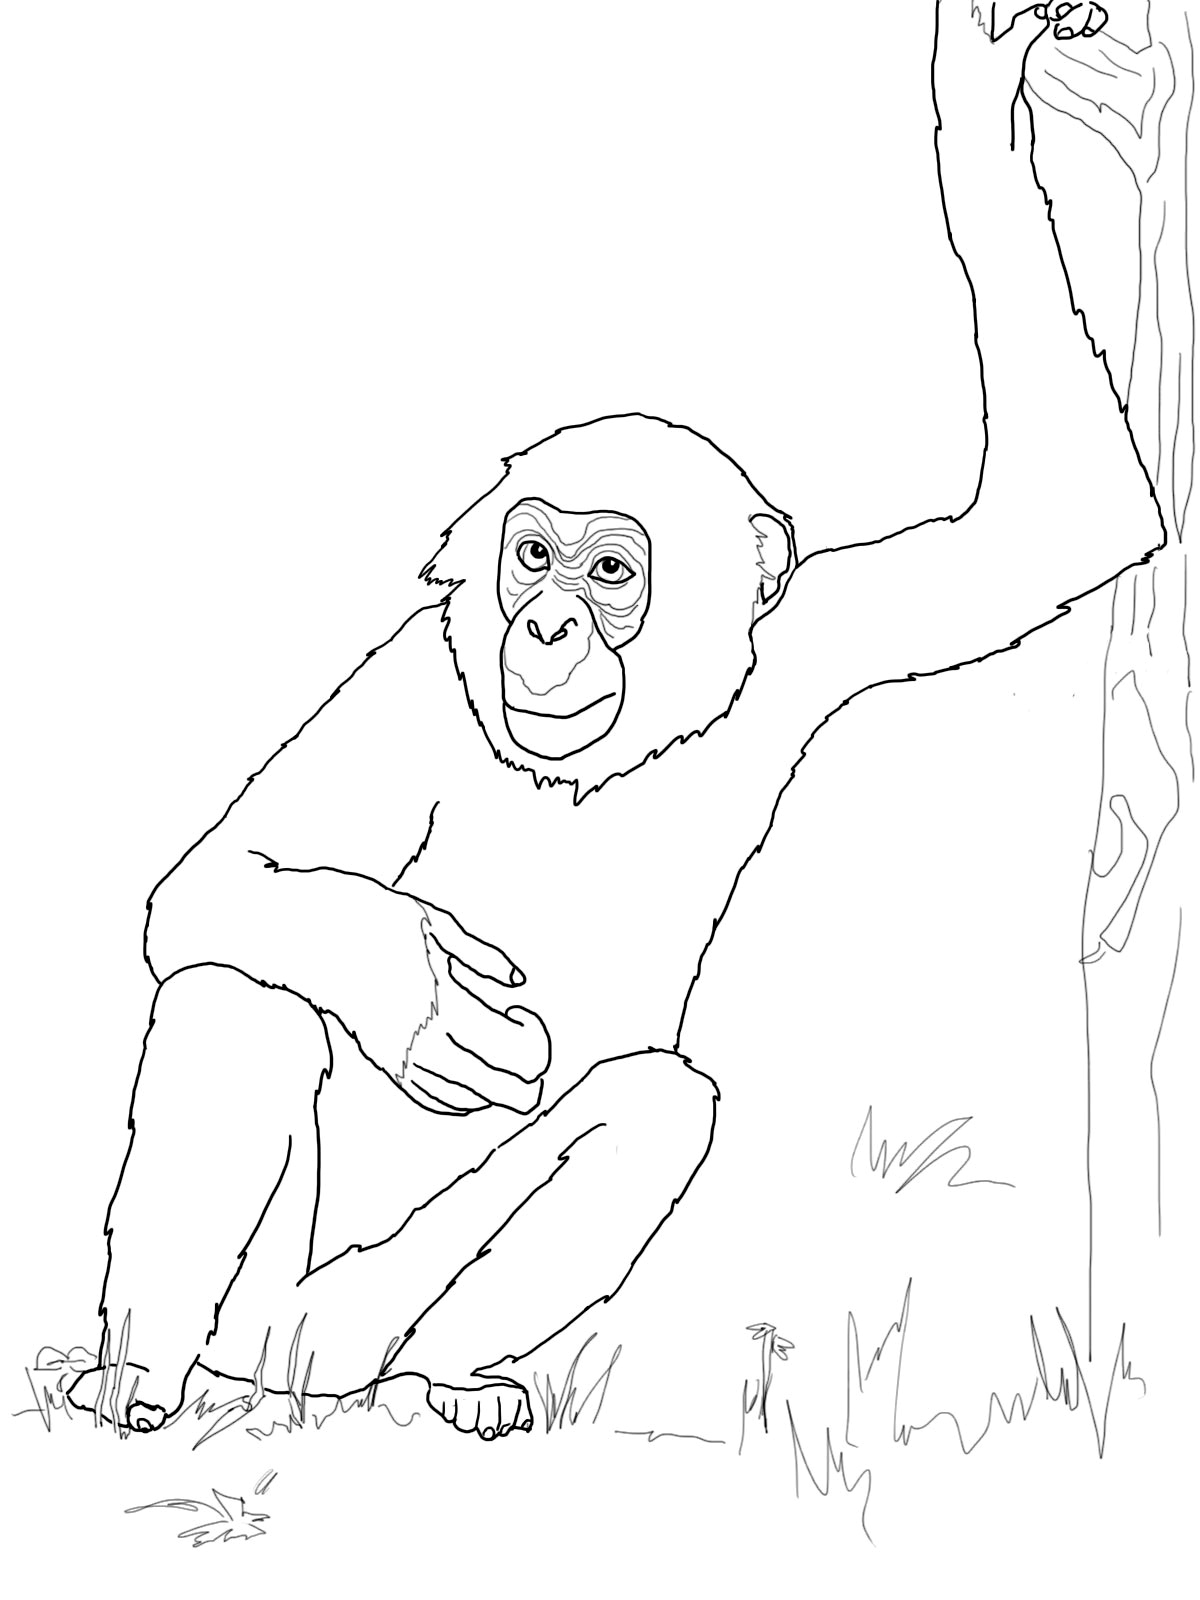 chimpanzee drawing